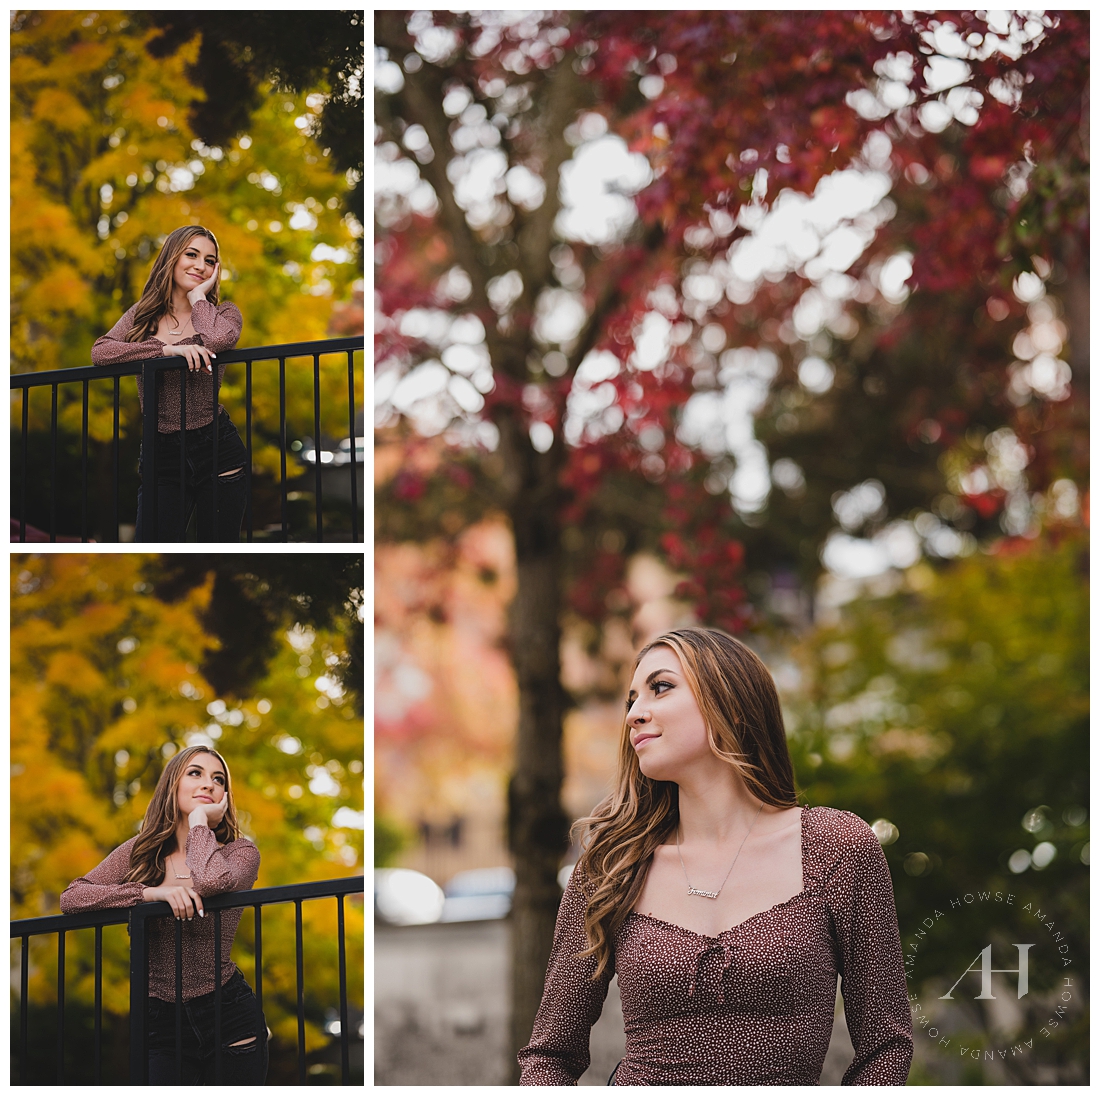 Fall Senior Portraits with Bright Leaves | Tacoma Senior Portraits | Photographed by the Best Tacoma, Washington Senior Photographer Amanda Howse Photography